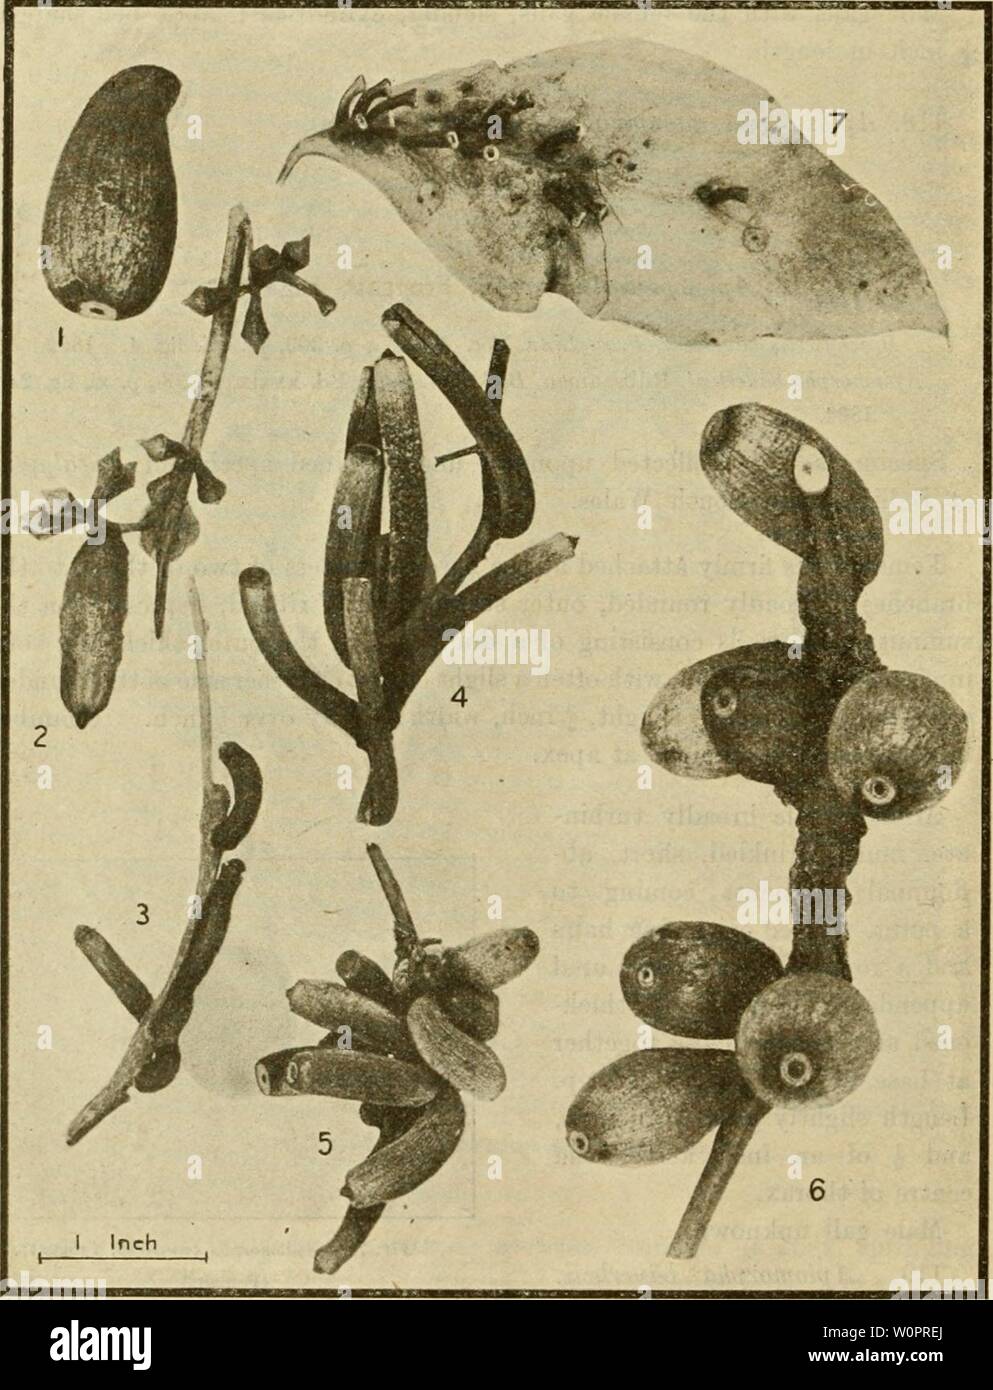 Archiv Bild ab Seite 123 von einem beschreibenden Katalog der. Ein beschreibender Katalog der Skala Insekten ('Coccidae') von Australien descriptivecatal 02 frog Jahr: 1915 118 WISSENSCHAFT BULLETIN, Nr. 18. Apiomorpha Hornhaut, Froggatt (Abbn. 76 und 77). Brachyscelis conica, Proc. Linn. Soc. N. S. W., S. 365, Pi. vi., Abb. 3. 1892. Apiomorpha conica, Riibsaamen, Berl. Ent. Zeit., Bd. xxxix, pis. XI und XIV, S. 209. 1894. "Imilis, Rubsaamen, Berl. Ent. Zeit., Bd. xxxix, S. 210, pis. xi und xiv. 1894. Brachyscelis regularis, Tepper, Trans. Junge. Soc. S.A., S. 273, Pi. iii, Abb. 3. 1893. "Subconica, Tepper Stockfoto